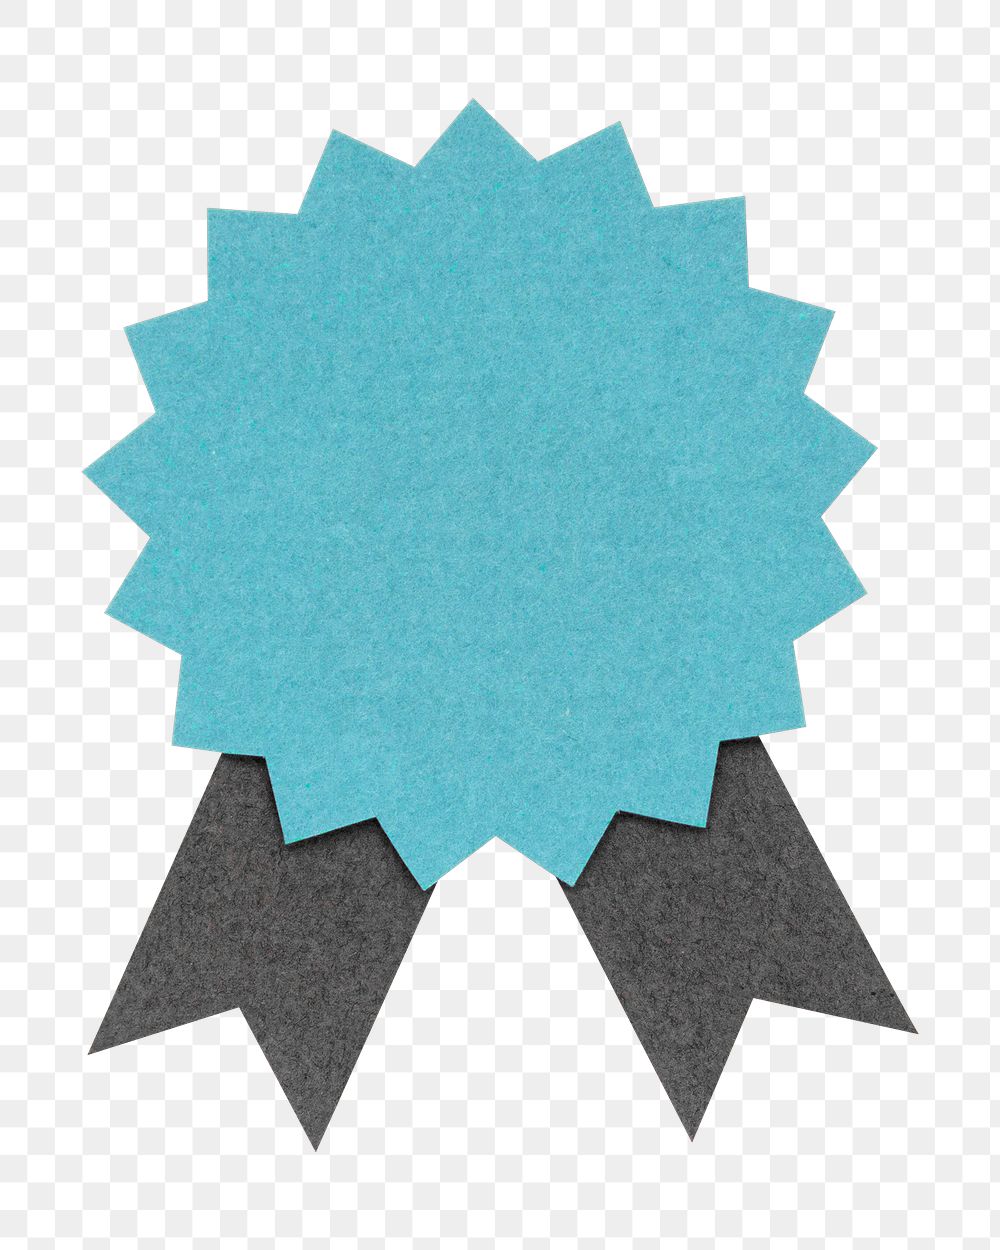 Blue prize badge paper craft design element